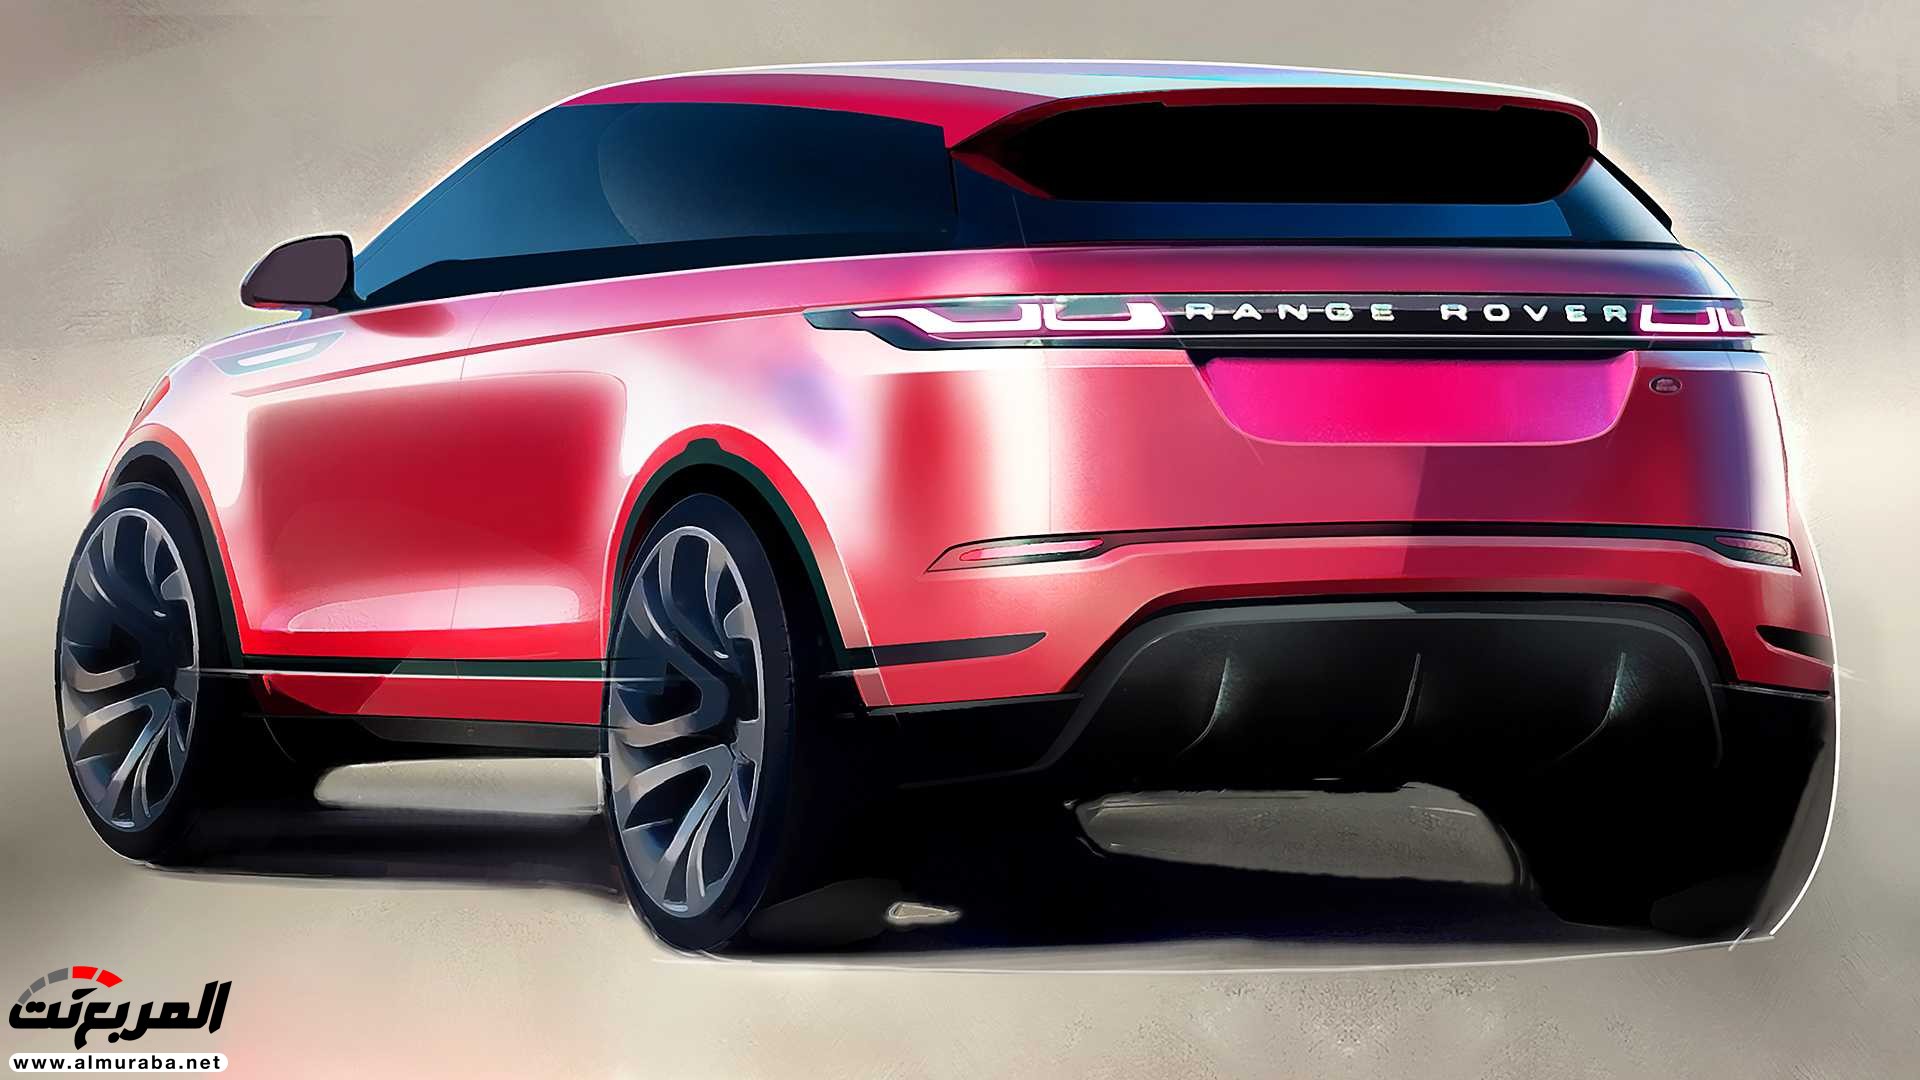 اهم 7 معلومات عن رنج روفر ايفوك 2020 الجديدة كلياً Range Rover Evoque 83